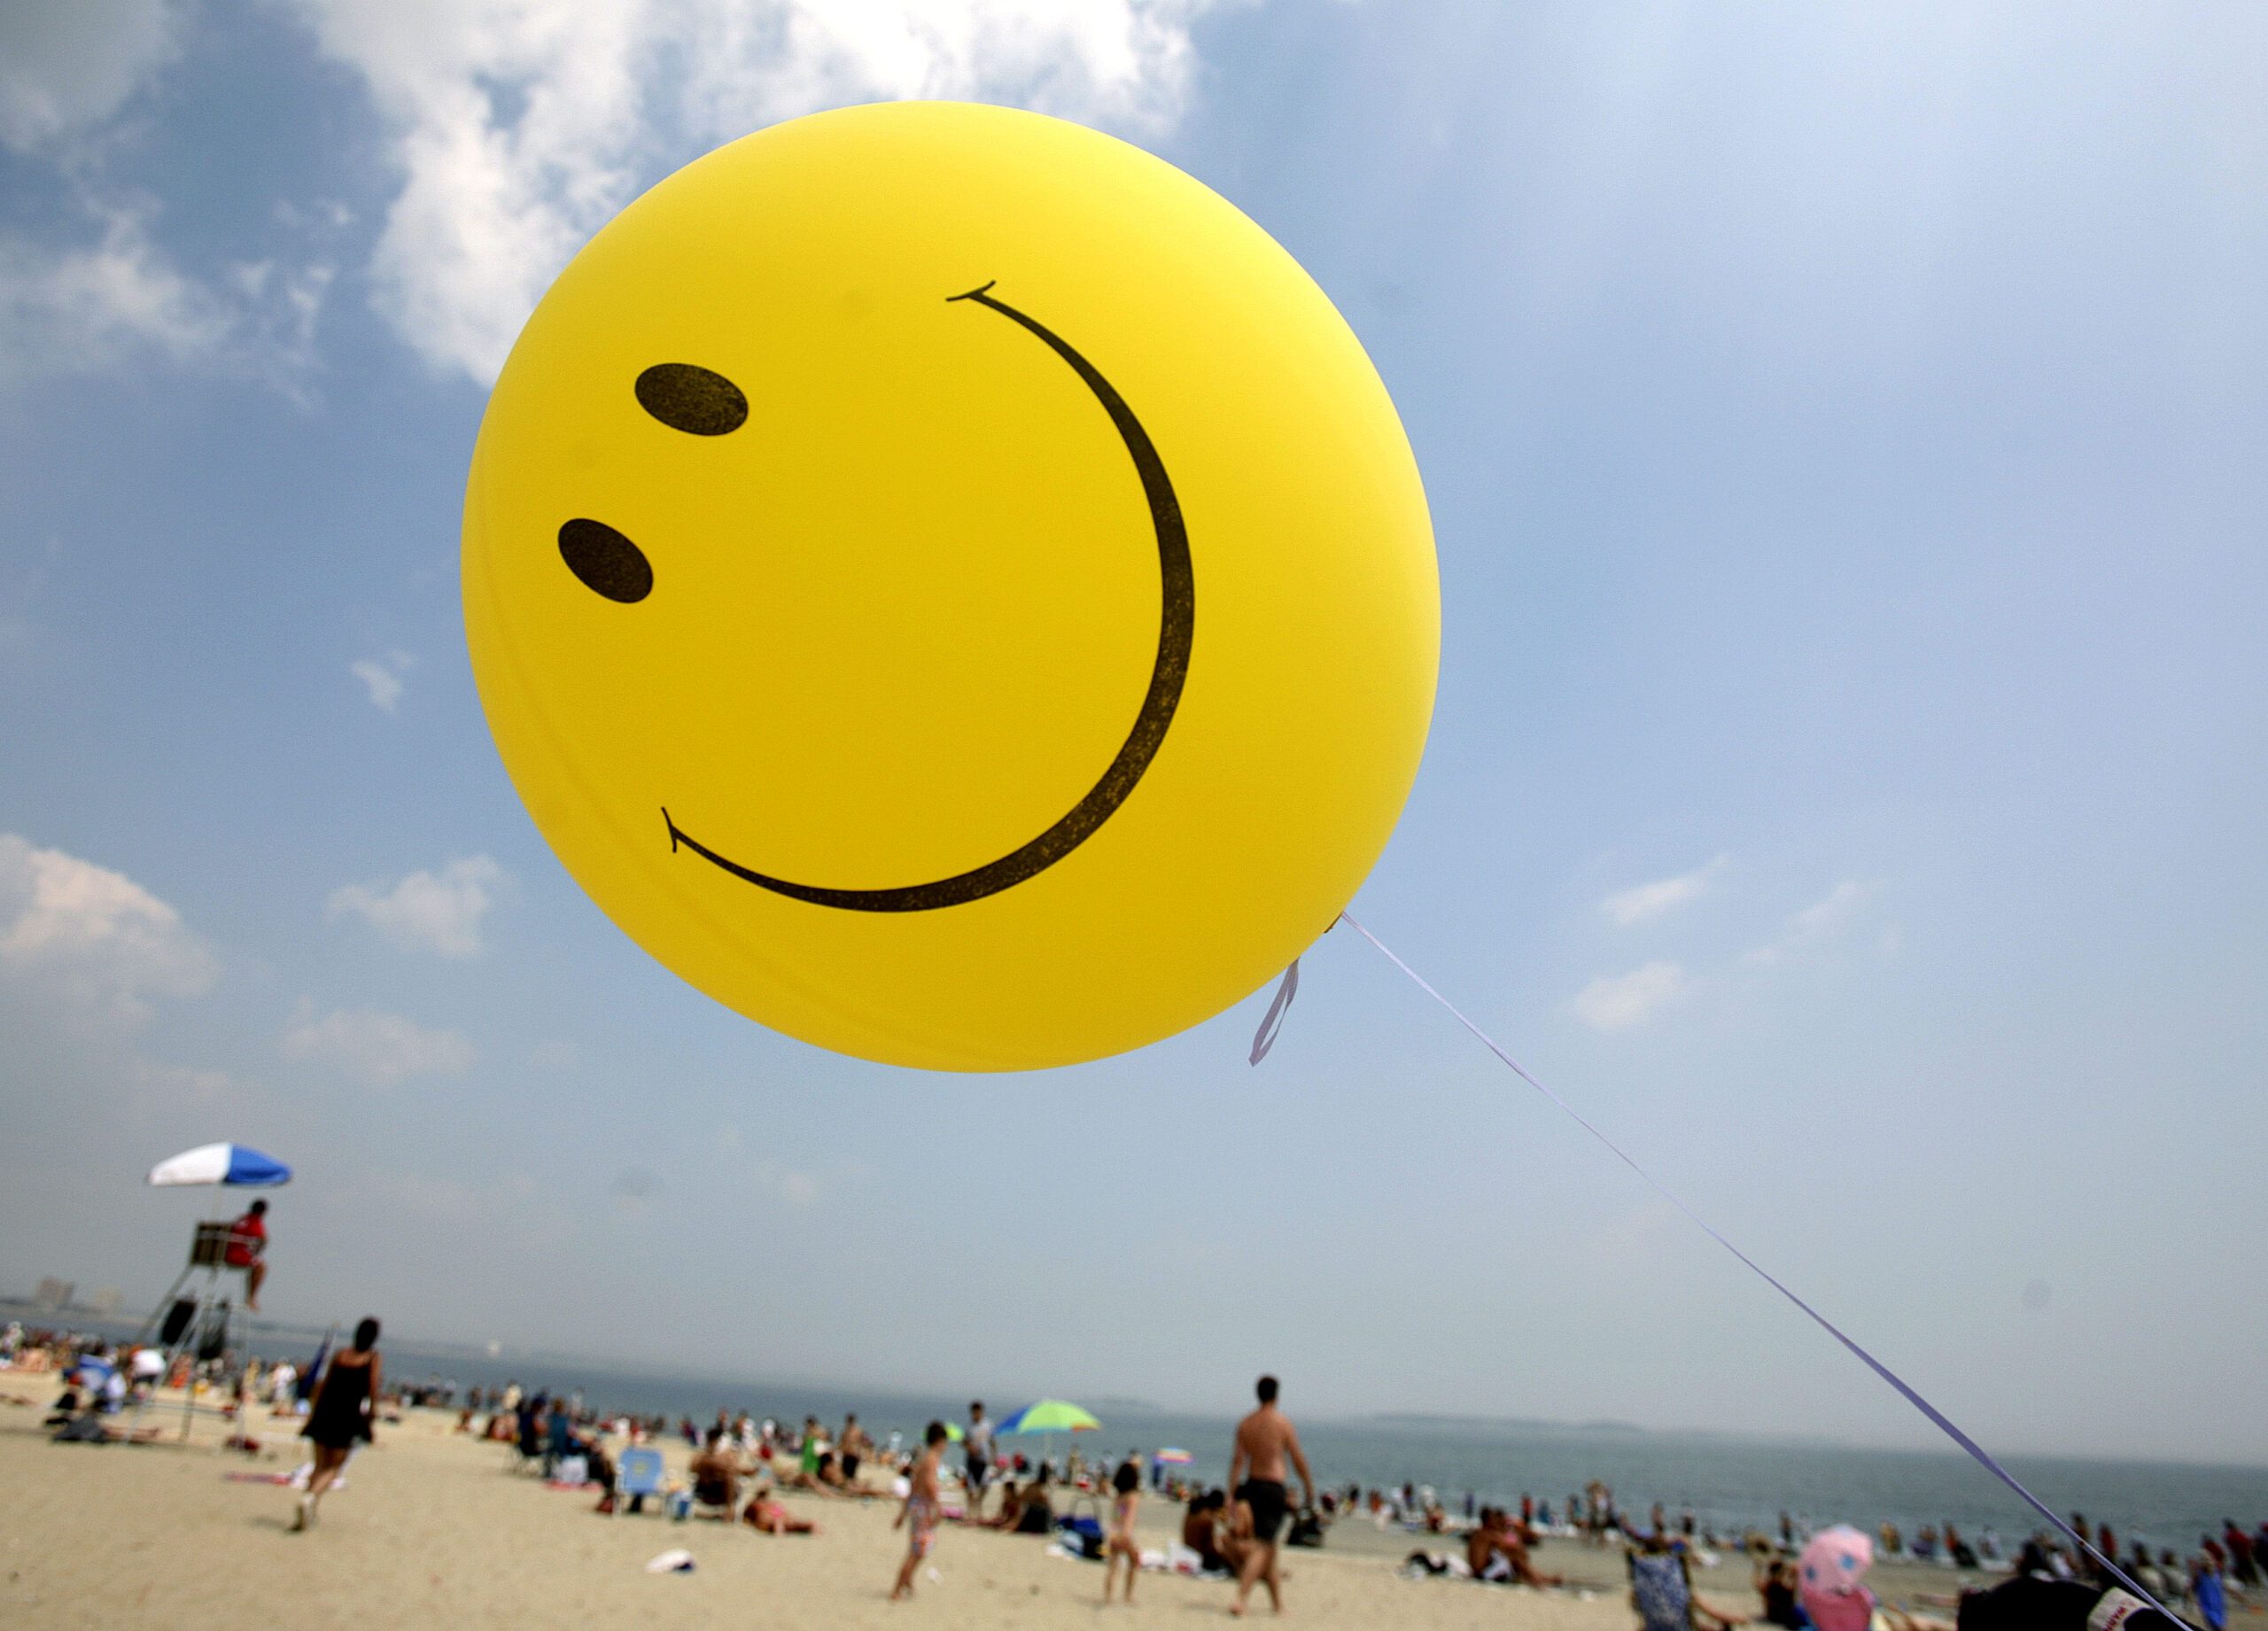 Smiley face balloon on the beach